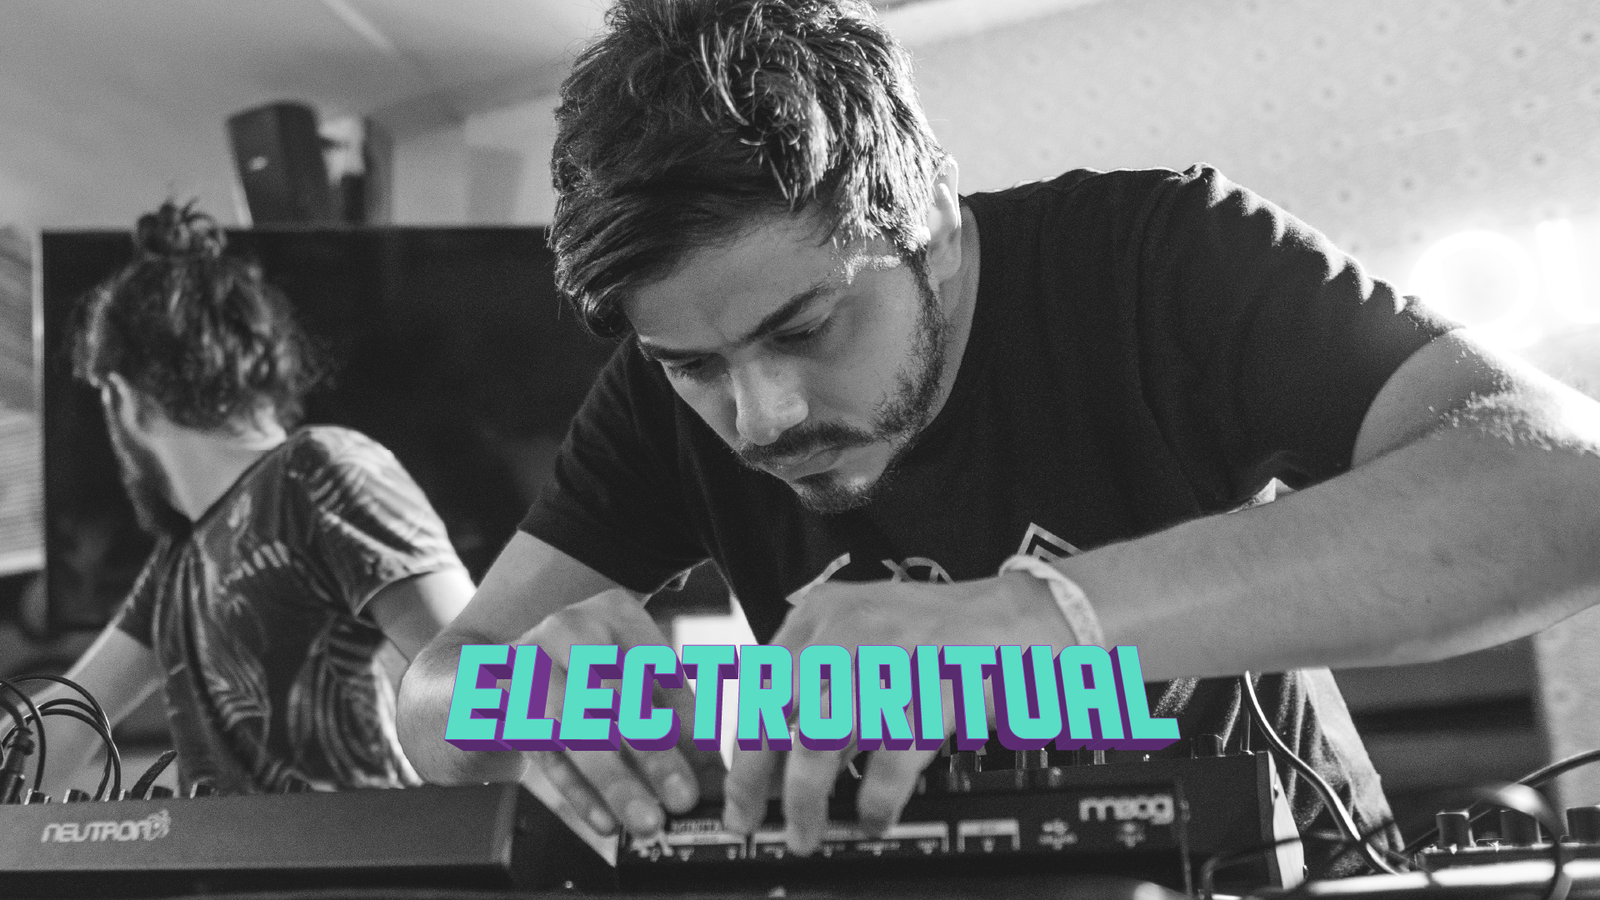 Creamos el circuito de eventos Electroritual, con el cuál hemos llevado a nuestros artistas de música electrónica a recorrer Colombia y hemos abierto espacios para artistas de todo el país